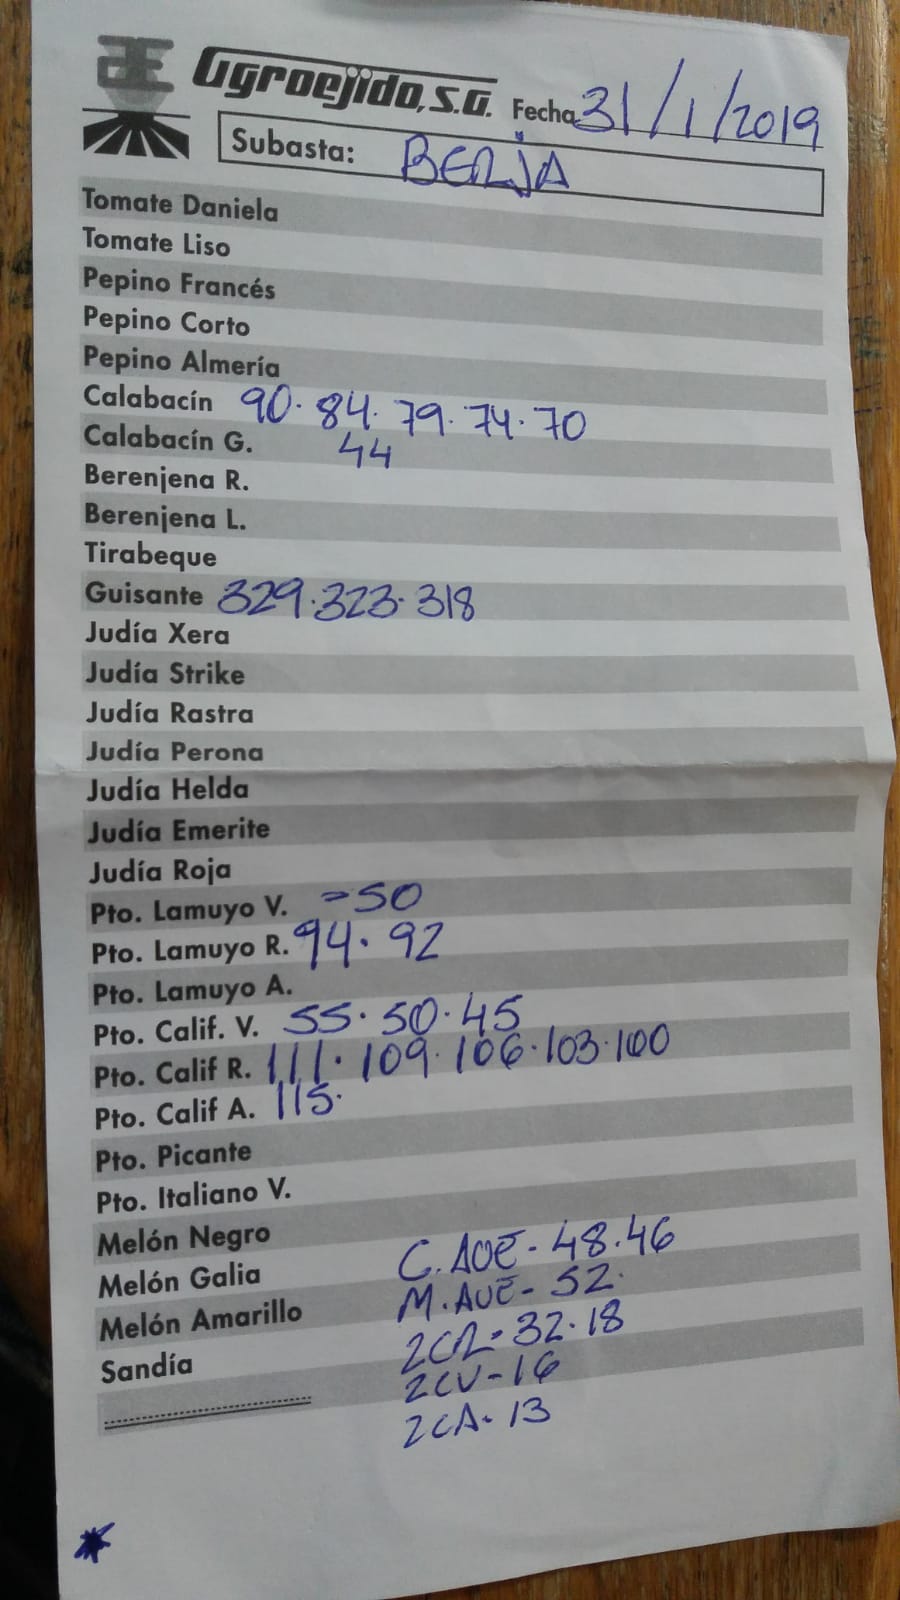 Subasta hortofrutícola AgroEjido Berja 31 de Enero 2019